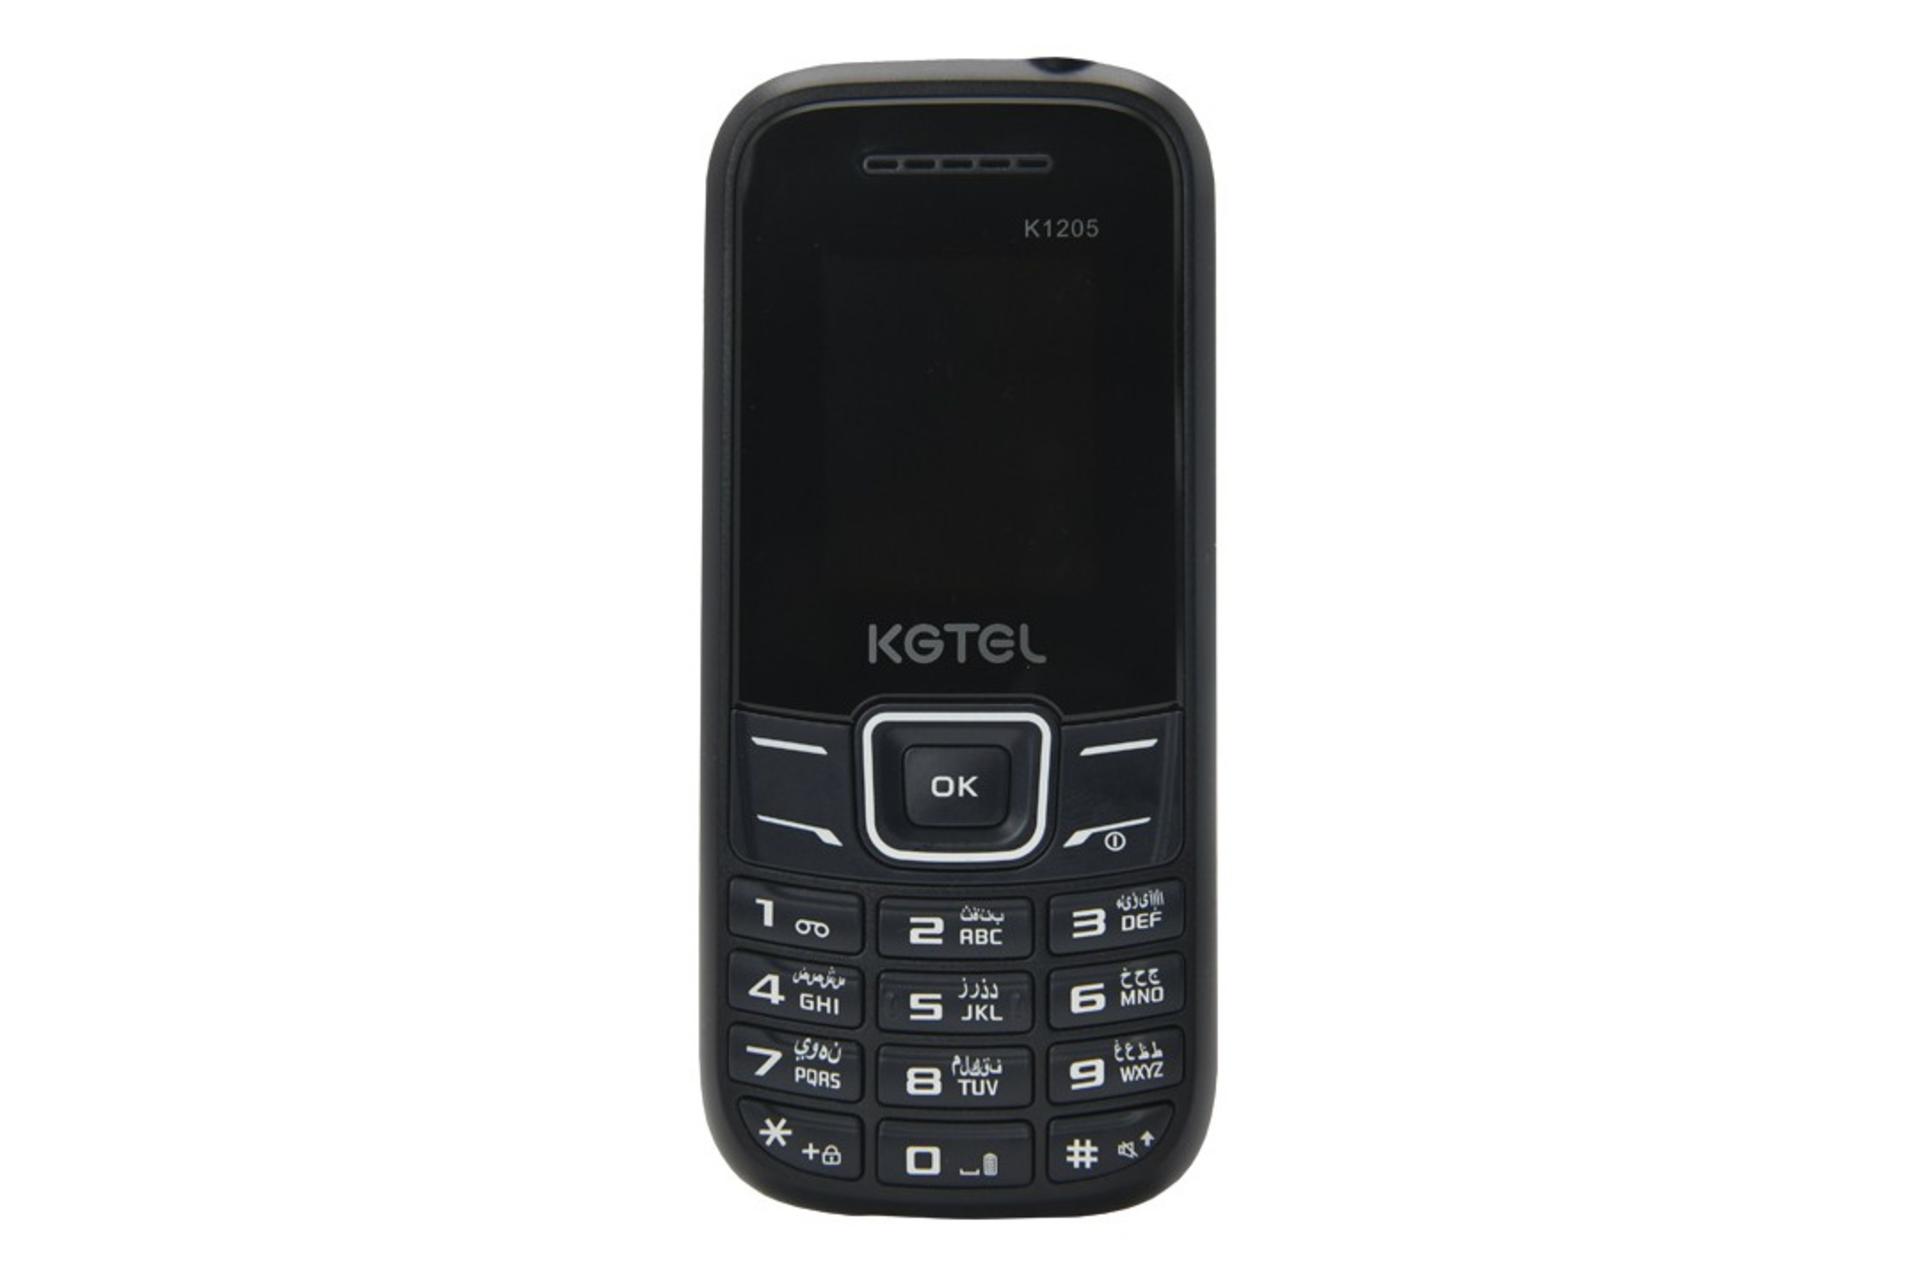 گوشی موبایل کاجیتل KGTEL K1205